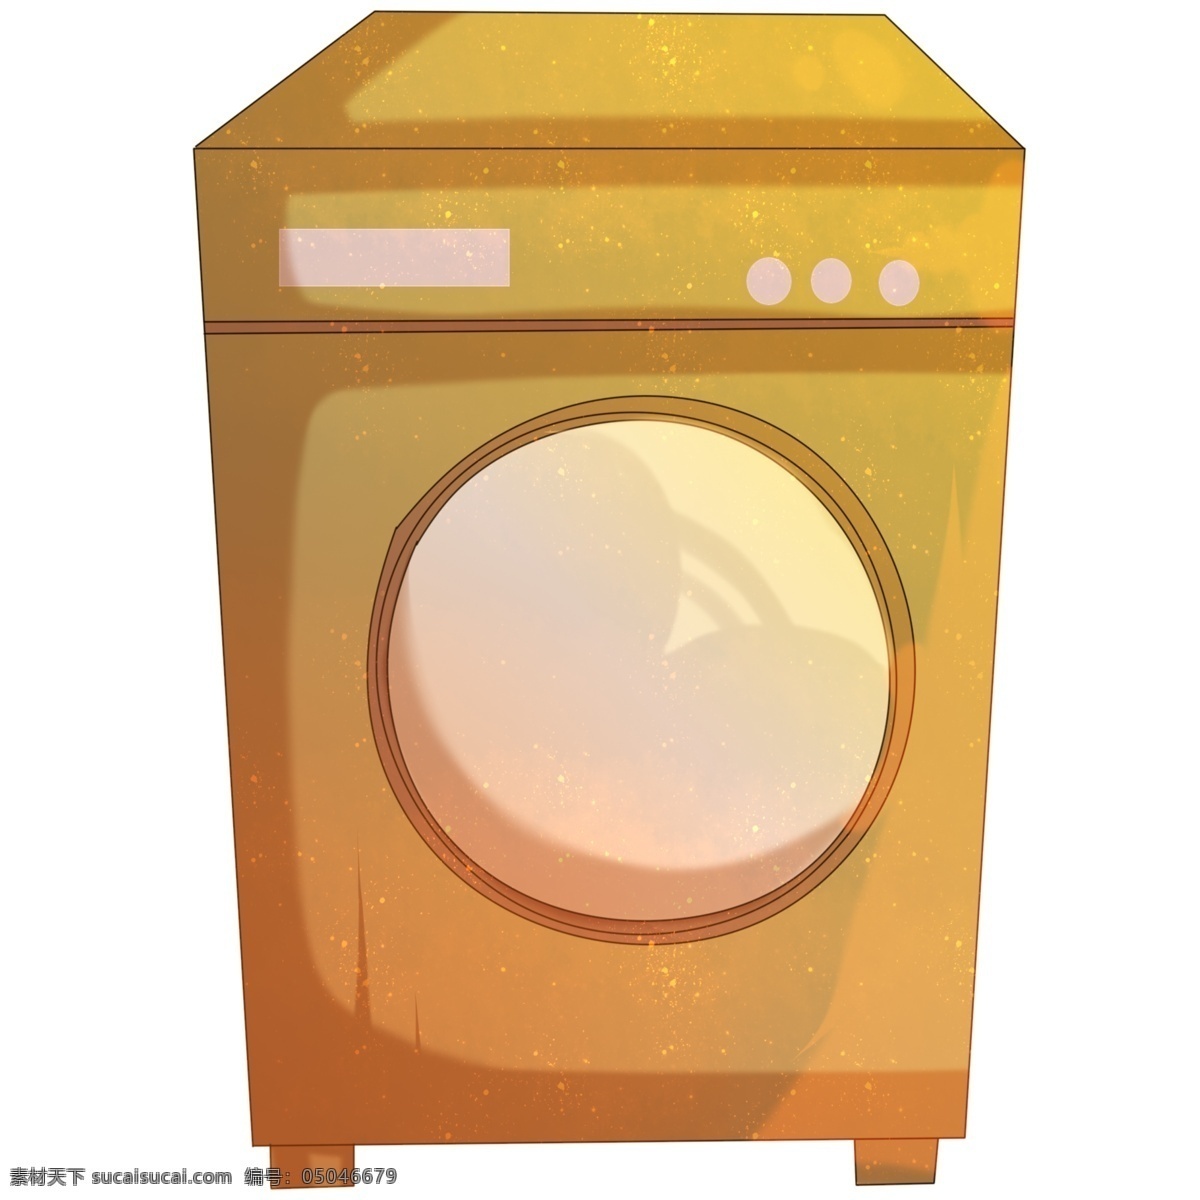 洗衣机 家电 插画 自动洗衣机 卡通插画 家电插画 家用电器 用电 电池 电器 洗衣机插画